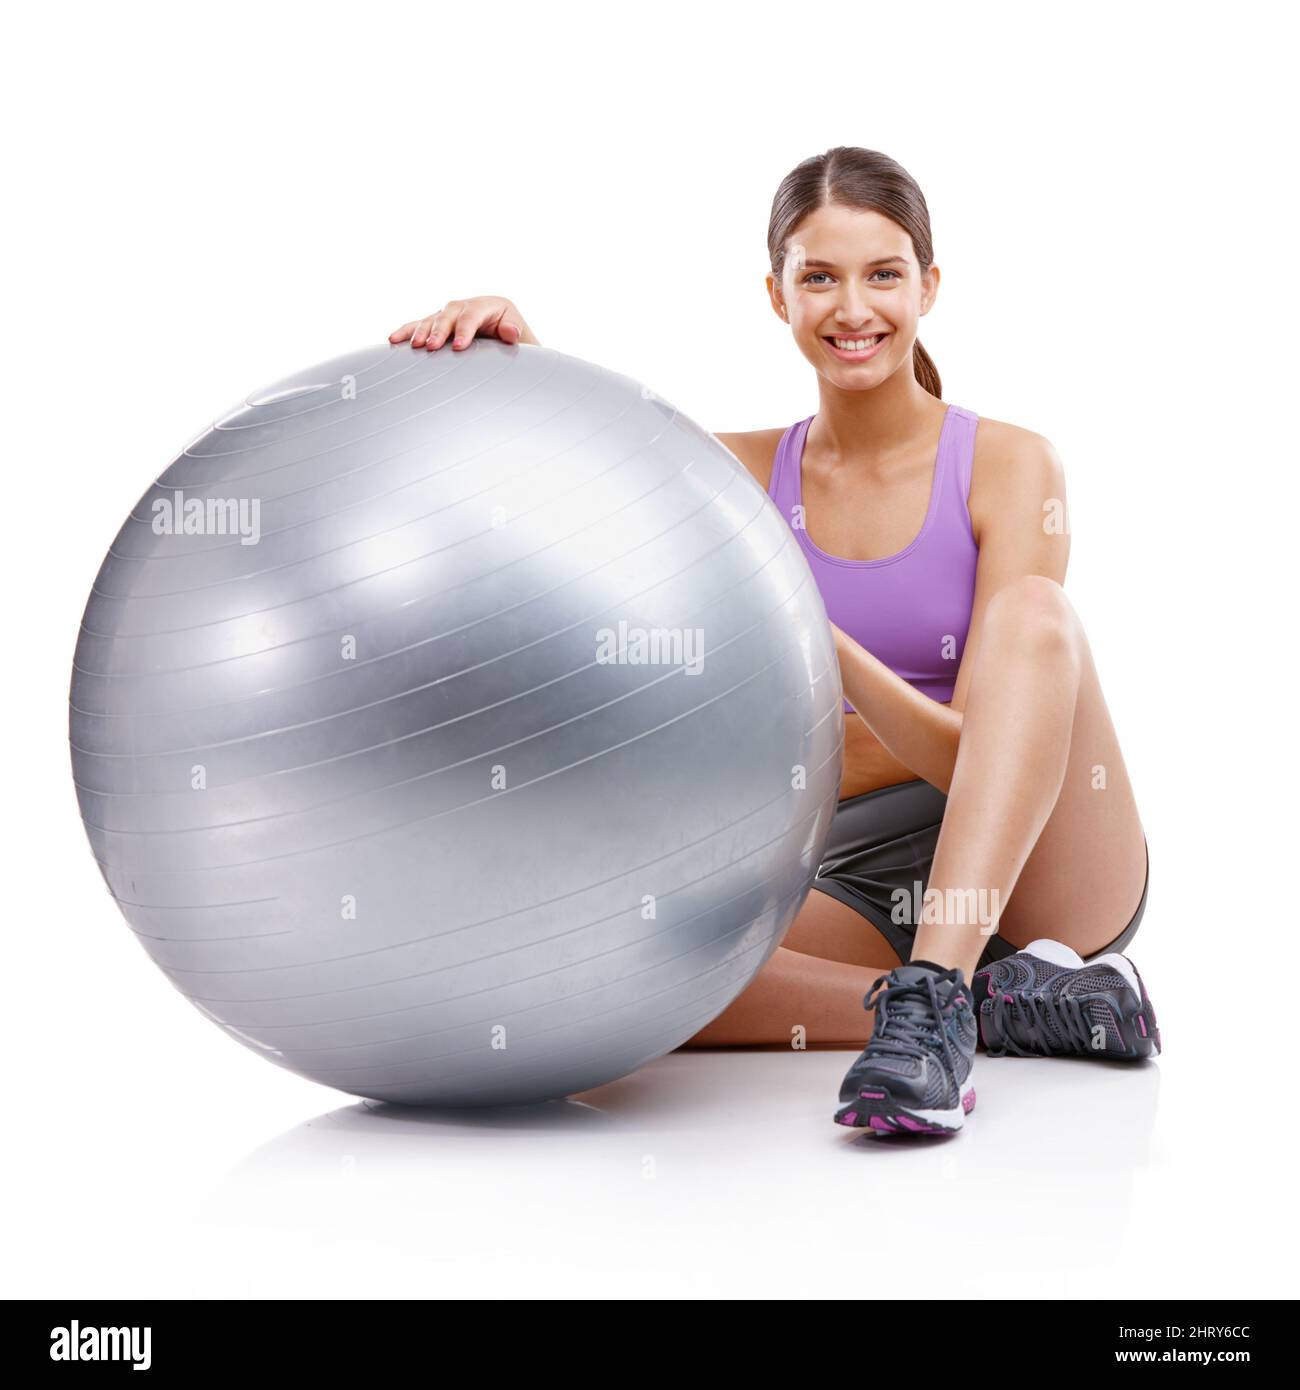 Jede Übung ist besser als keine Übung. Porträt einer jungen Frau, die neben ihrem Fitnessball sitzt. Stockfoto